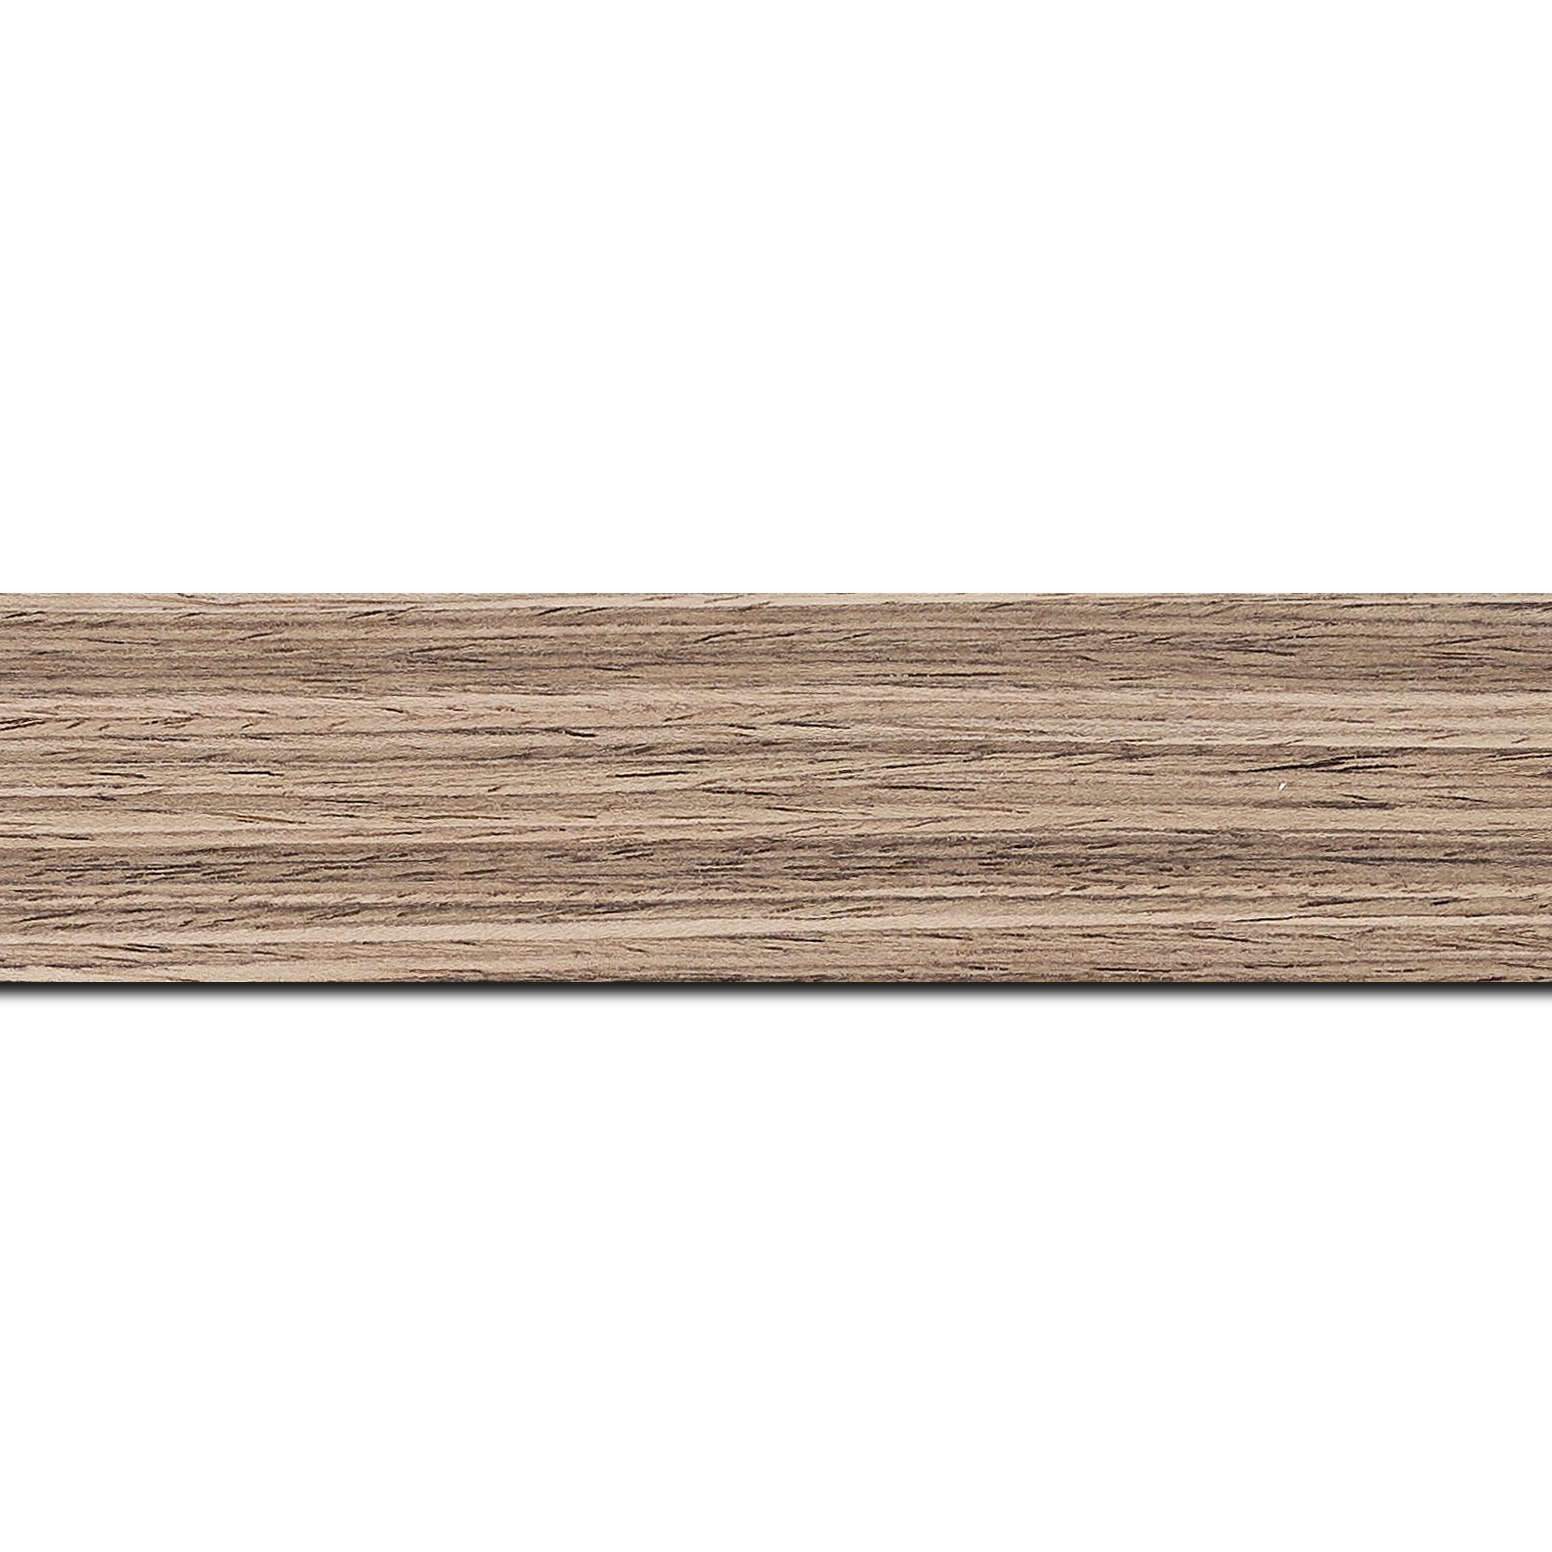 Pack par 12m, bois profil plat largeur 4cm plaquage noyer haut de gamme(longueur baguette pouvant varier entre 2.40m et 3m selon arrivage des bois)